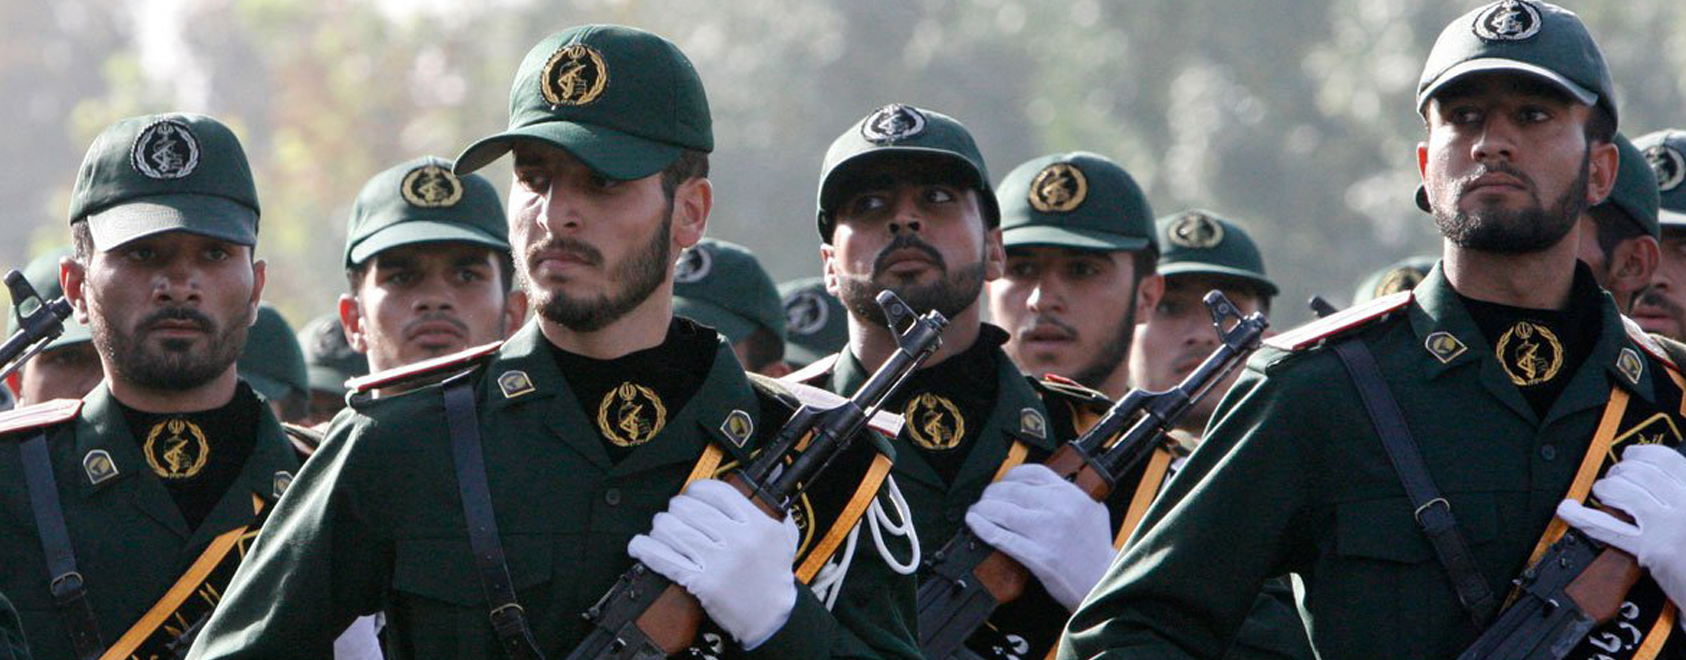 Πρώην αρχηγός ιρανικών ΕΔ: «Η Δύση χρησιμοποιούσε σαύρες και χαμαιλέοντες ως κατασκόπους»